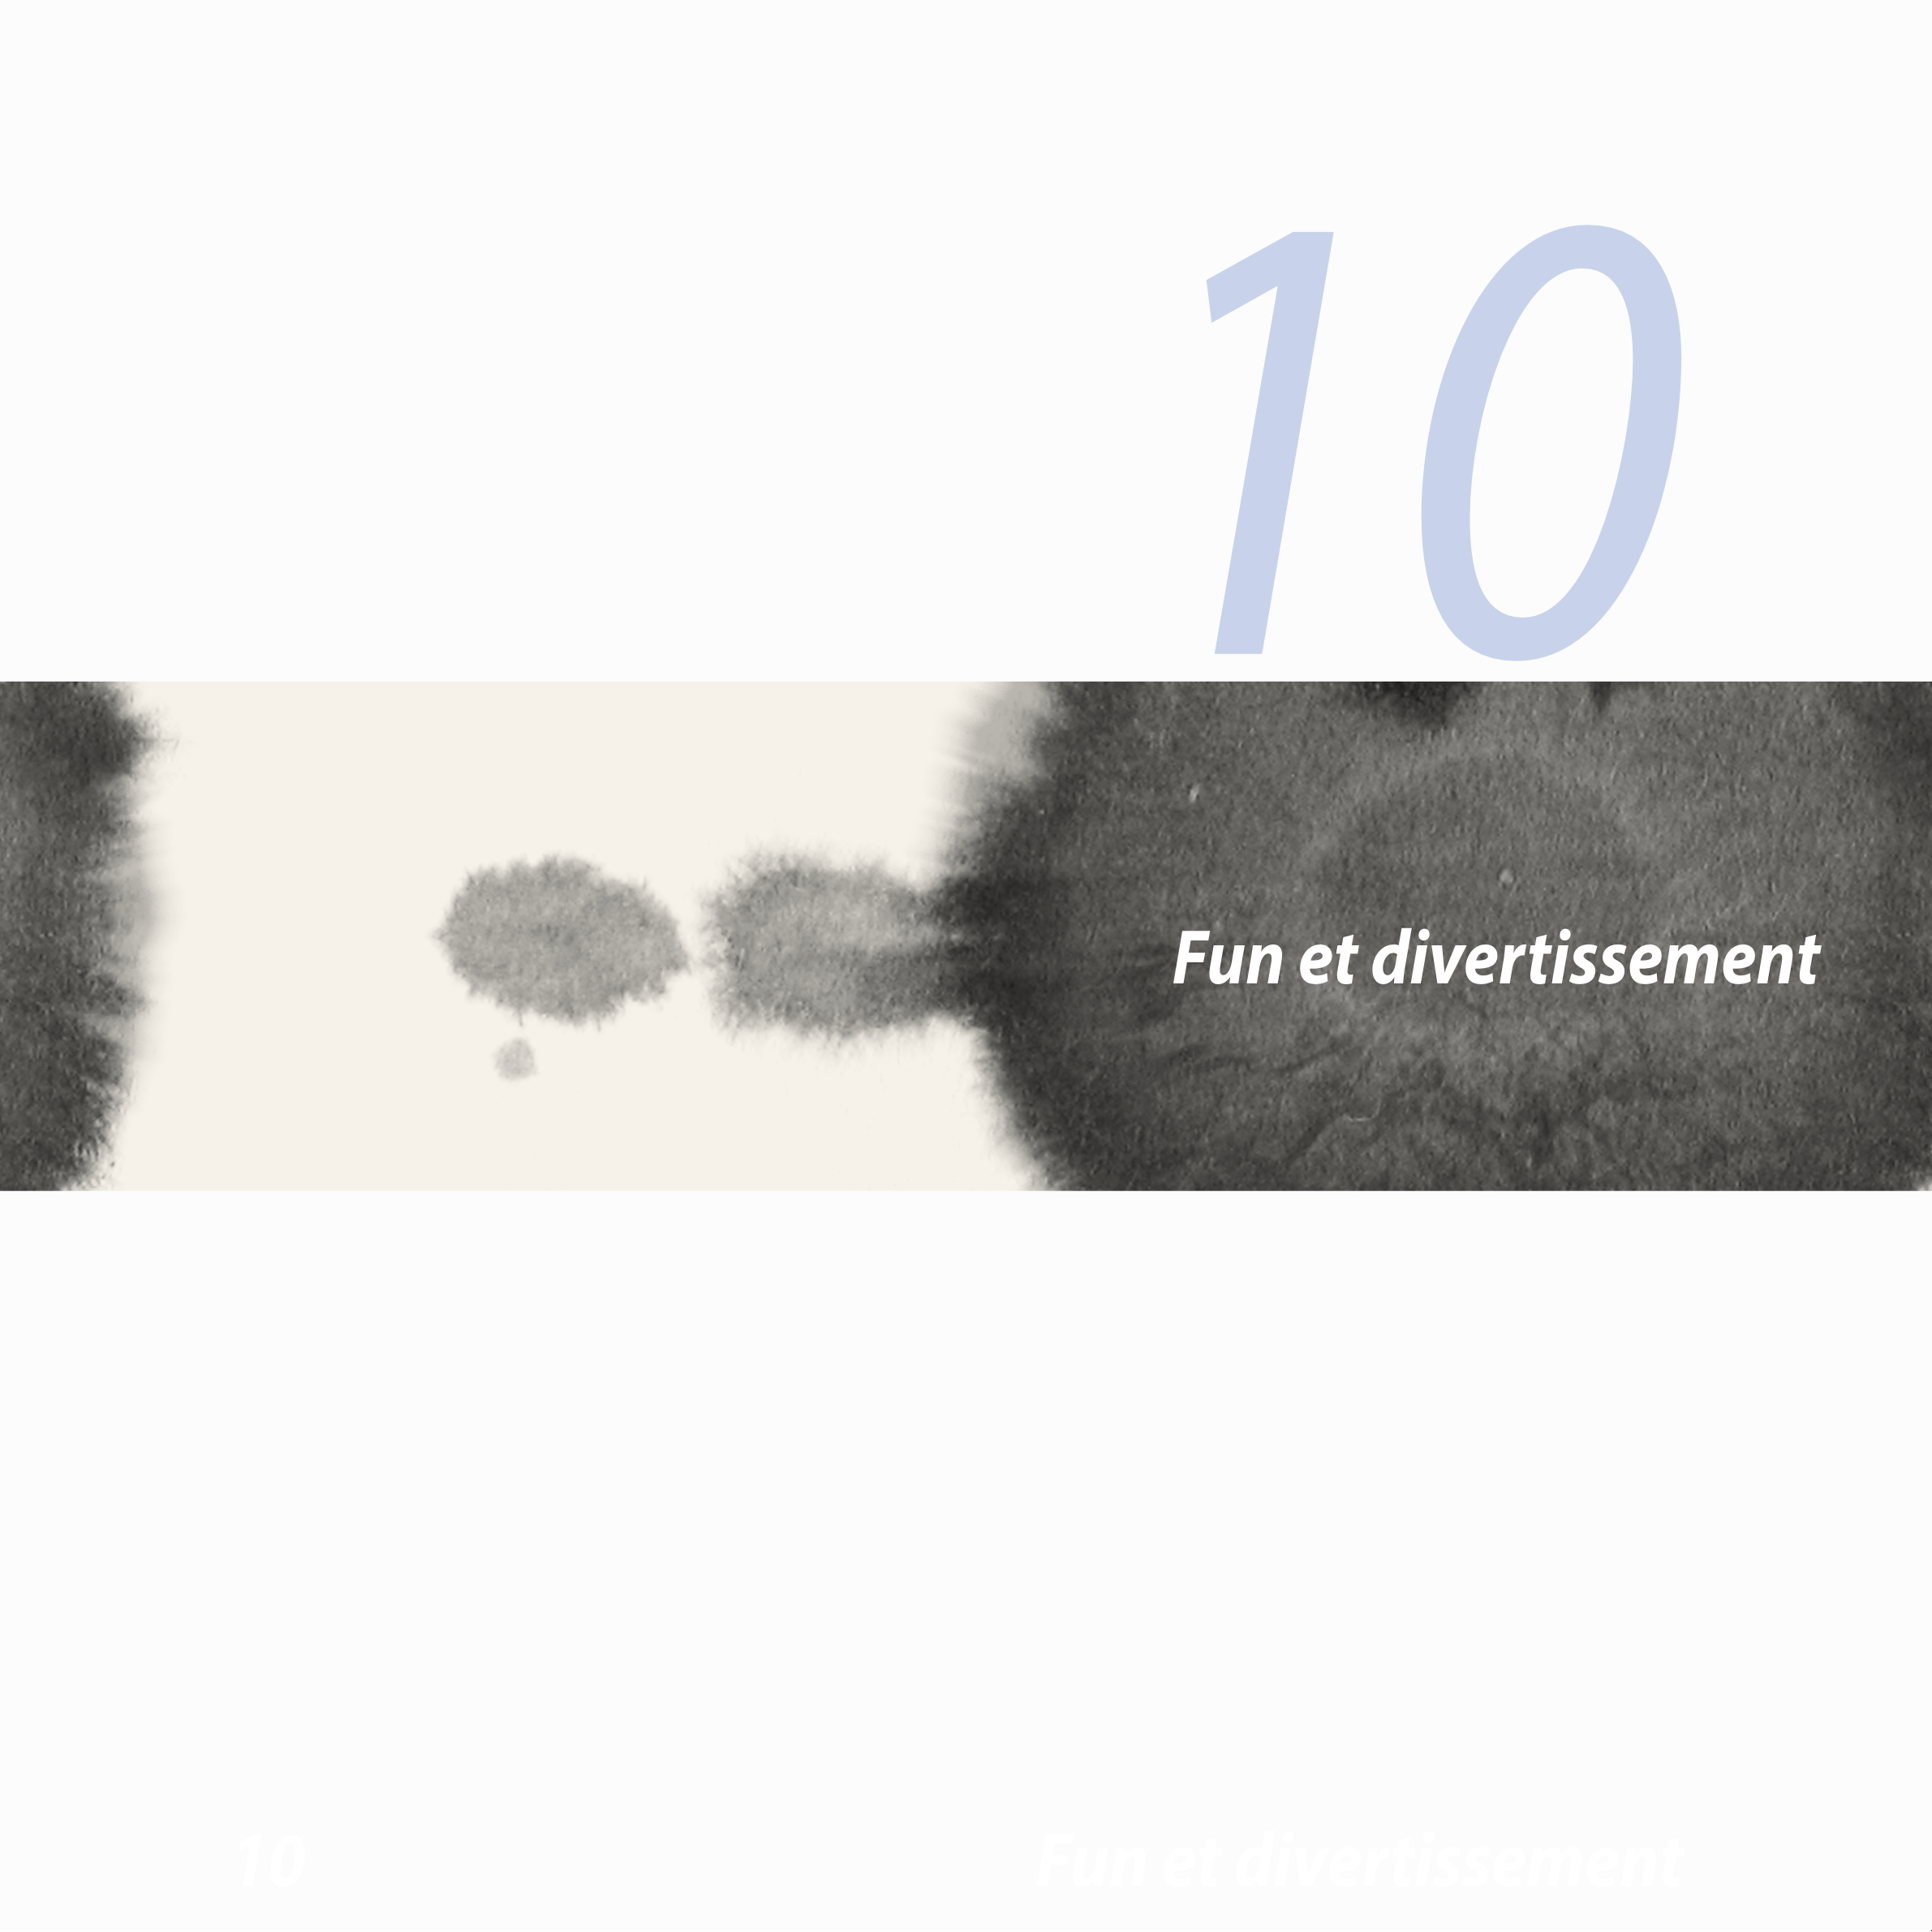 10
Fun et divertissement
10  Fun et divertissement